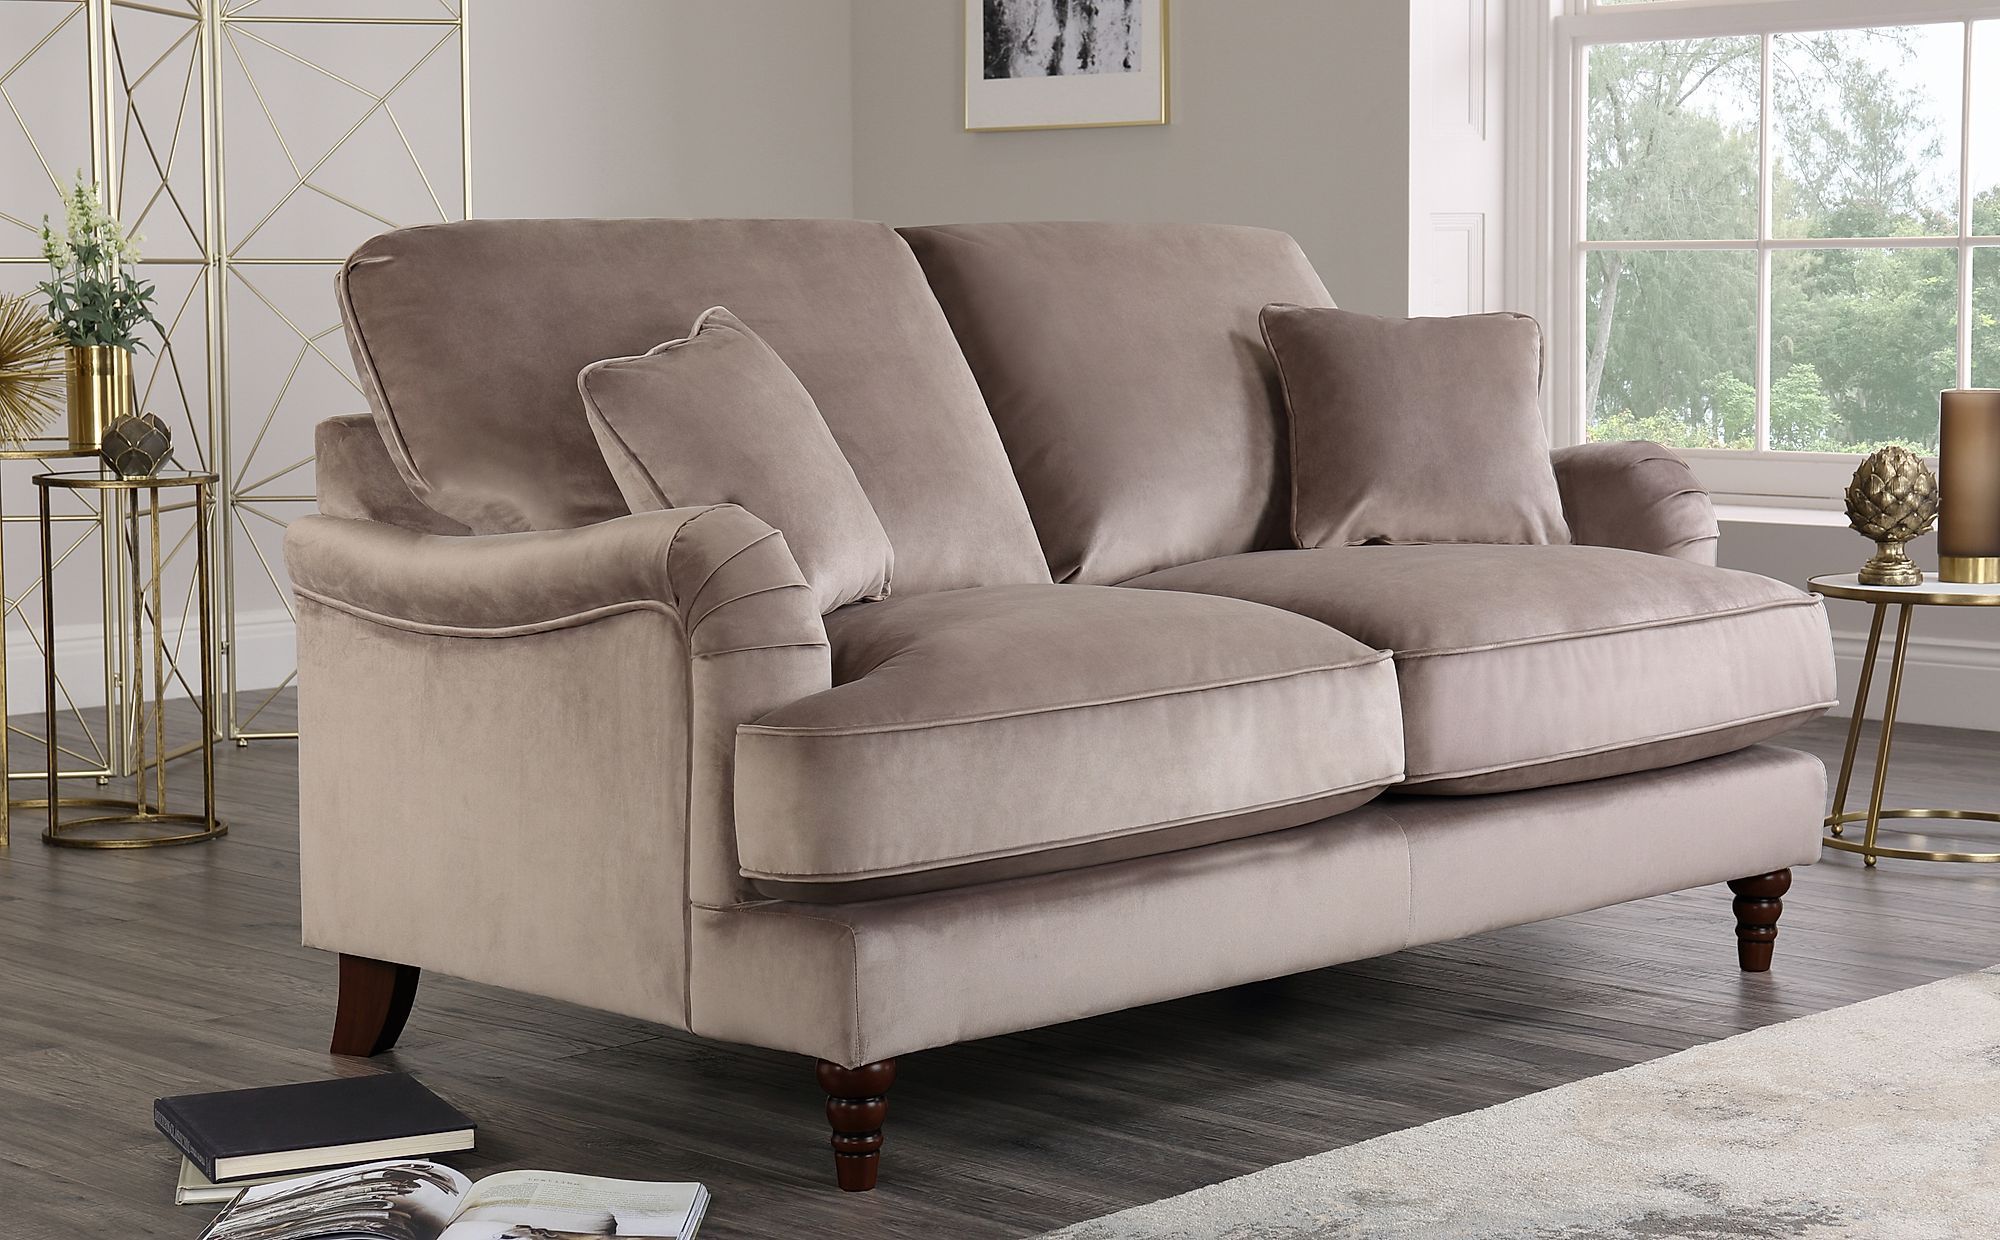 Charleston Mink Velvet 2 Seater Sofa | Furniture Choice Inside 2 Seater Black Velvet Sofa Beds (View 6 of 20)